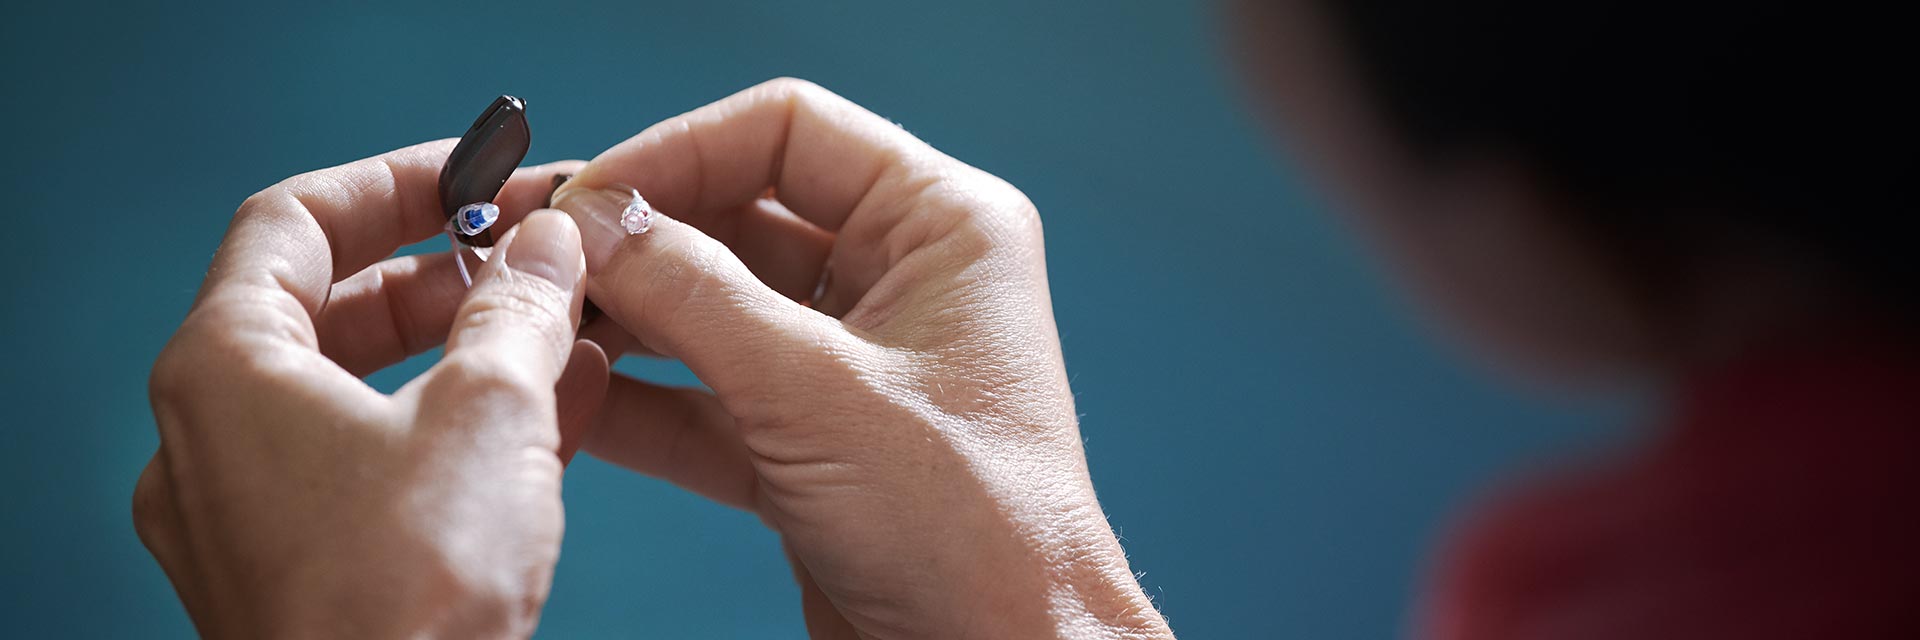 L’image montre deux mains qui s’échangent des piles d’appareils auditifs